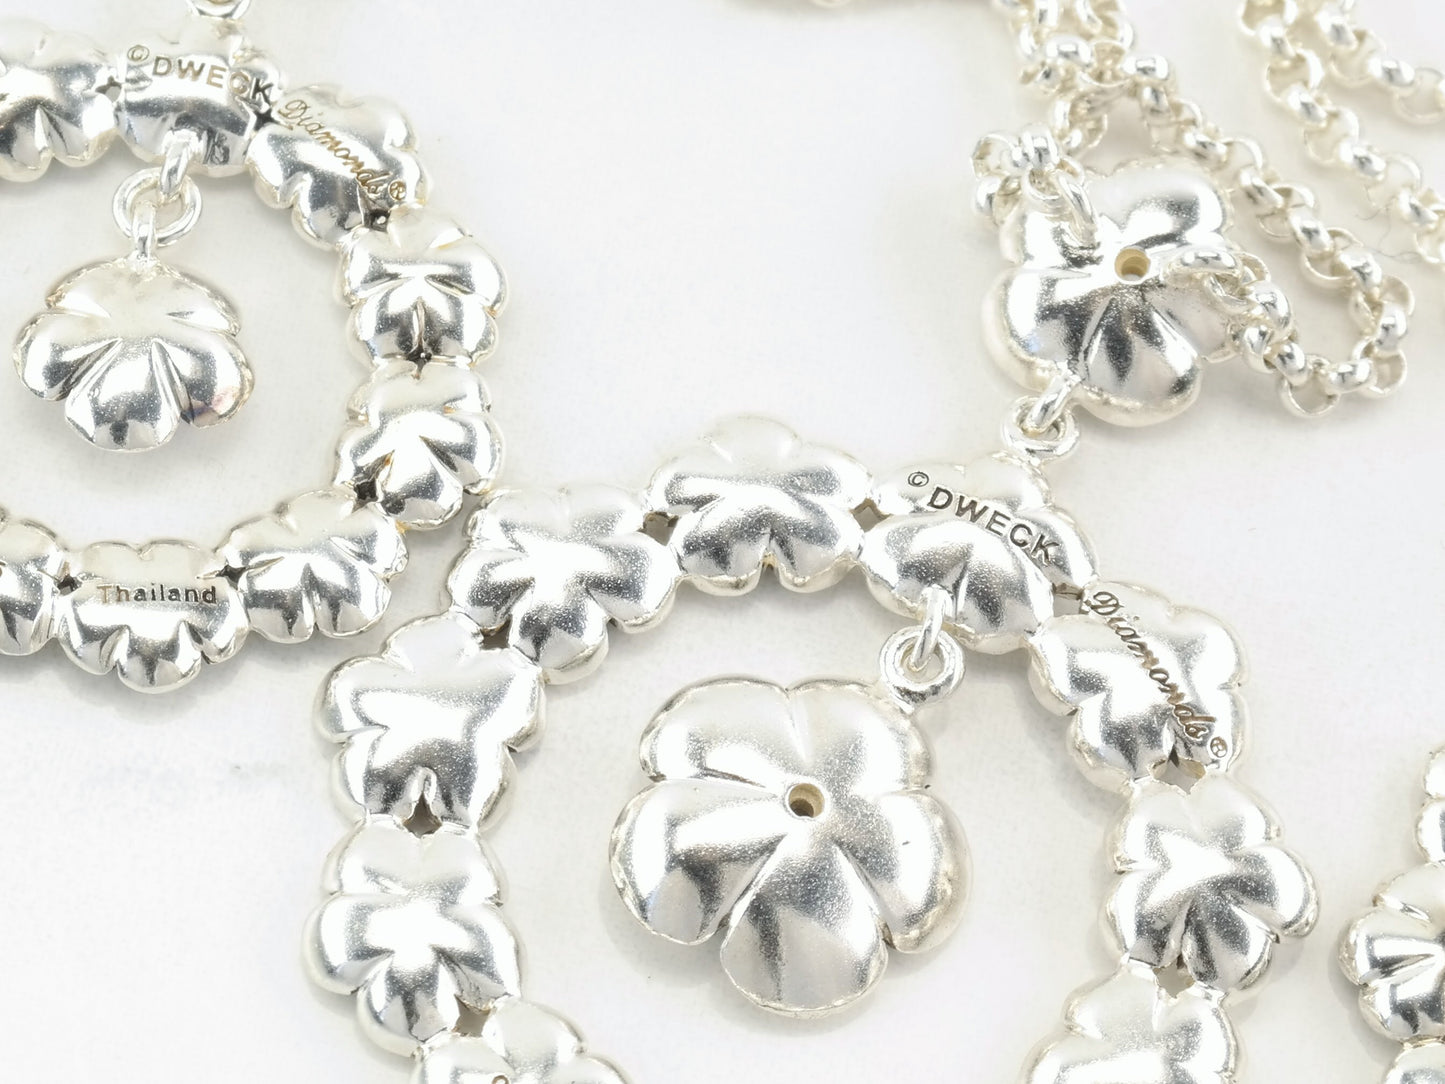 Vintage Dweck Diamond Flower Necklace Earrings Sterling Silver Jewelry Set